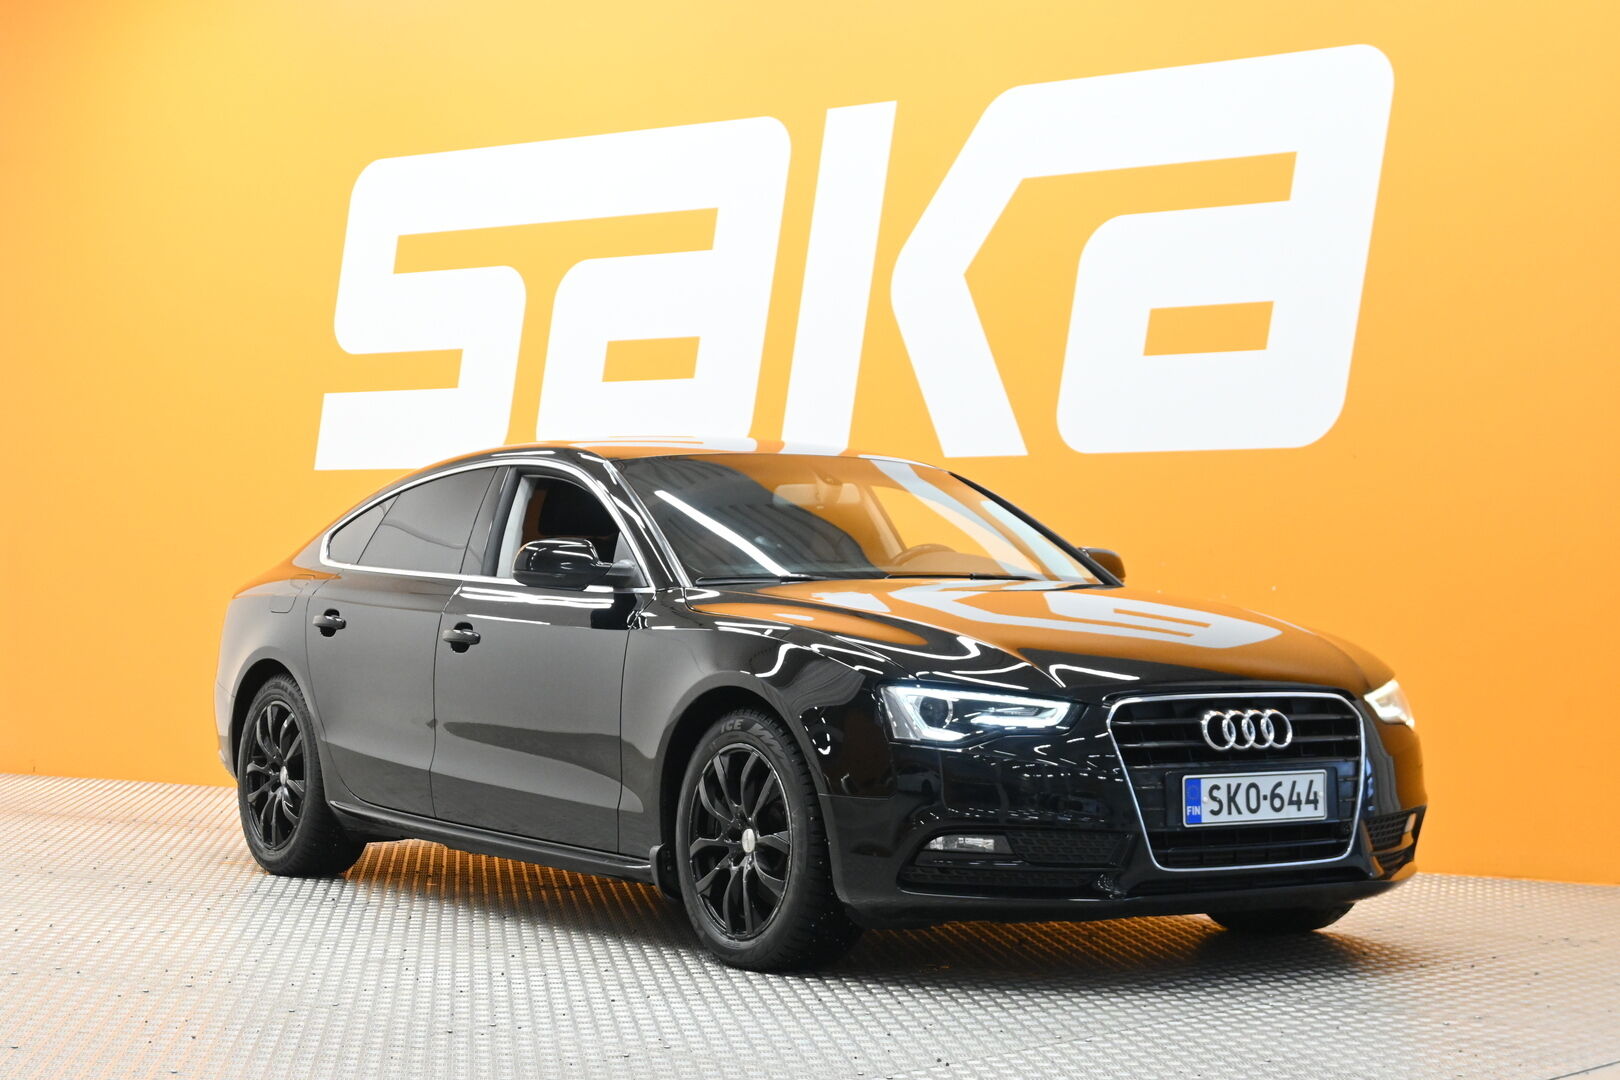 Musta Viistoperä, Audi A5 – SKO-644